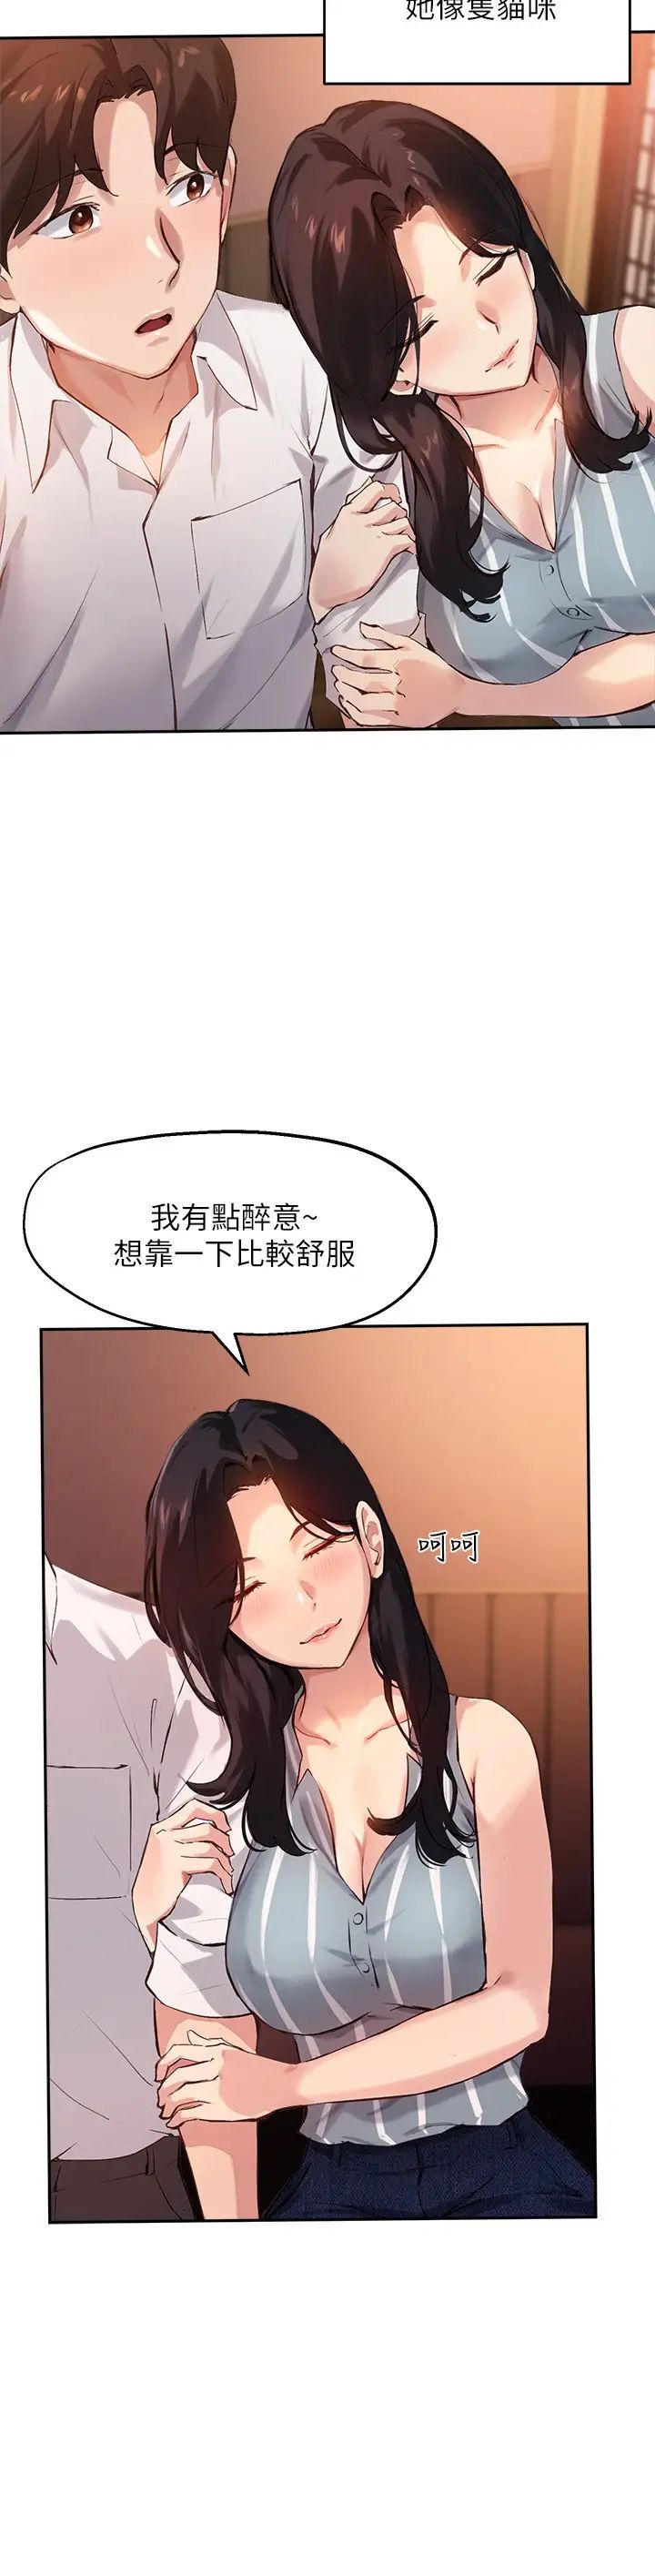 韩国污漫画 指導女大生 第29话隐密包厢内的诱惑 17